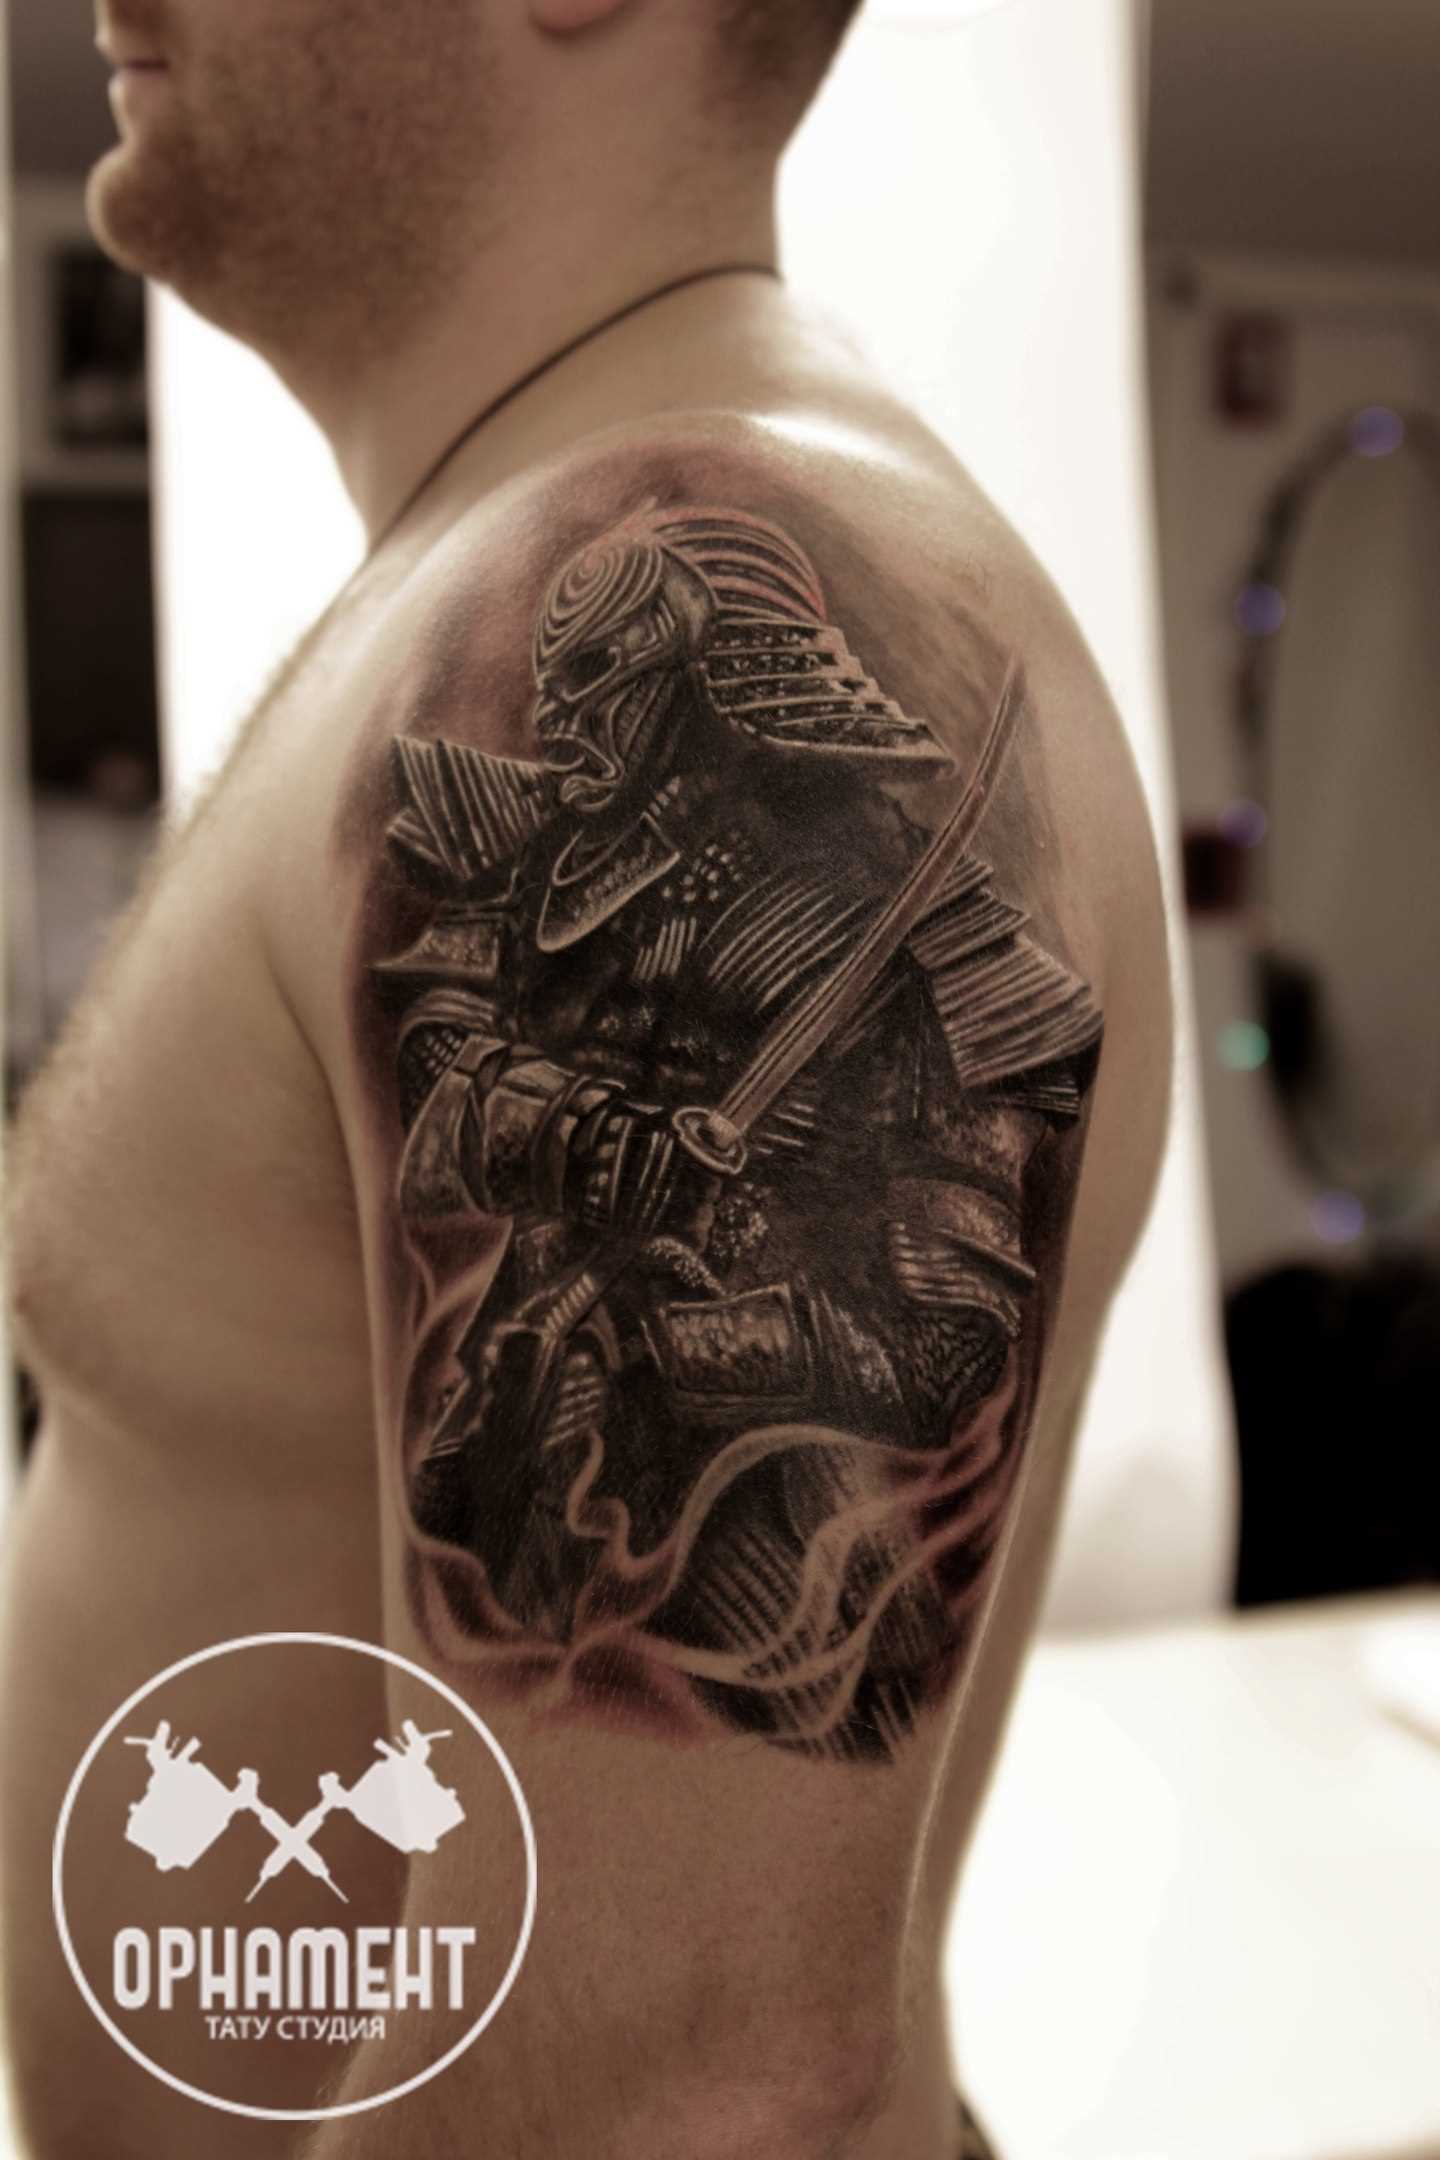 A tatuagem de samurai no ombro do cara